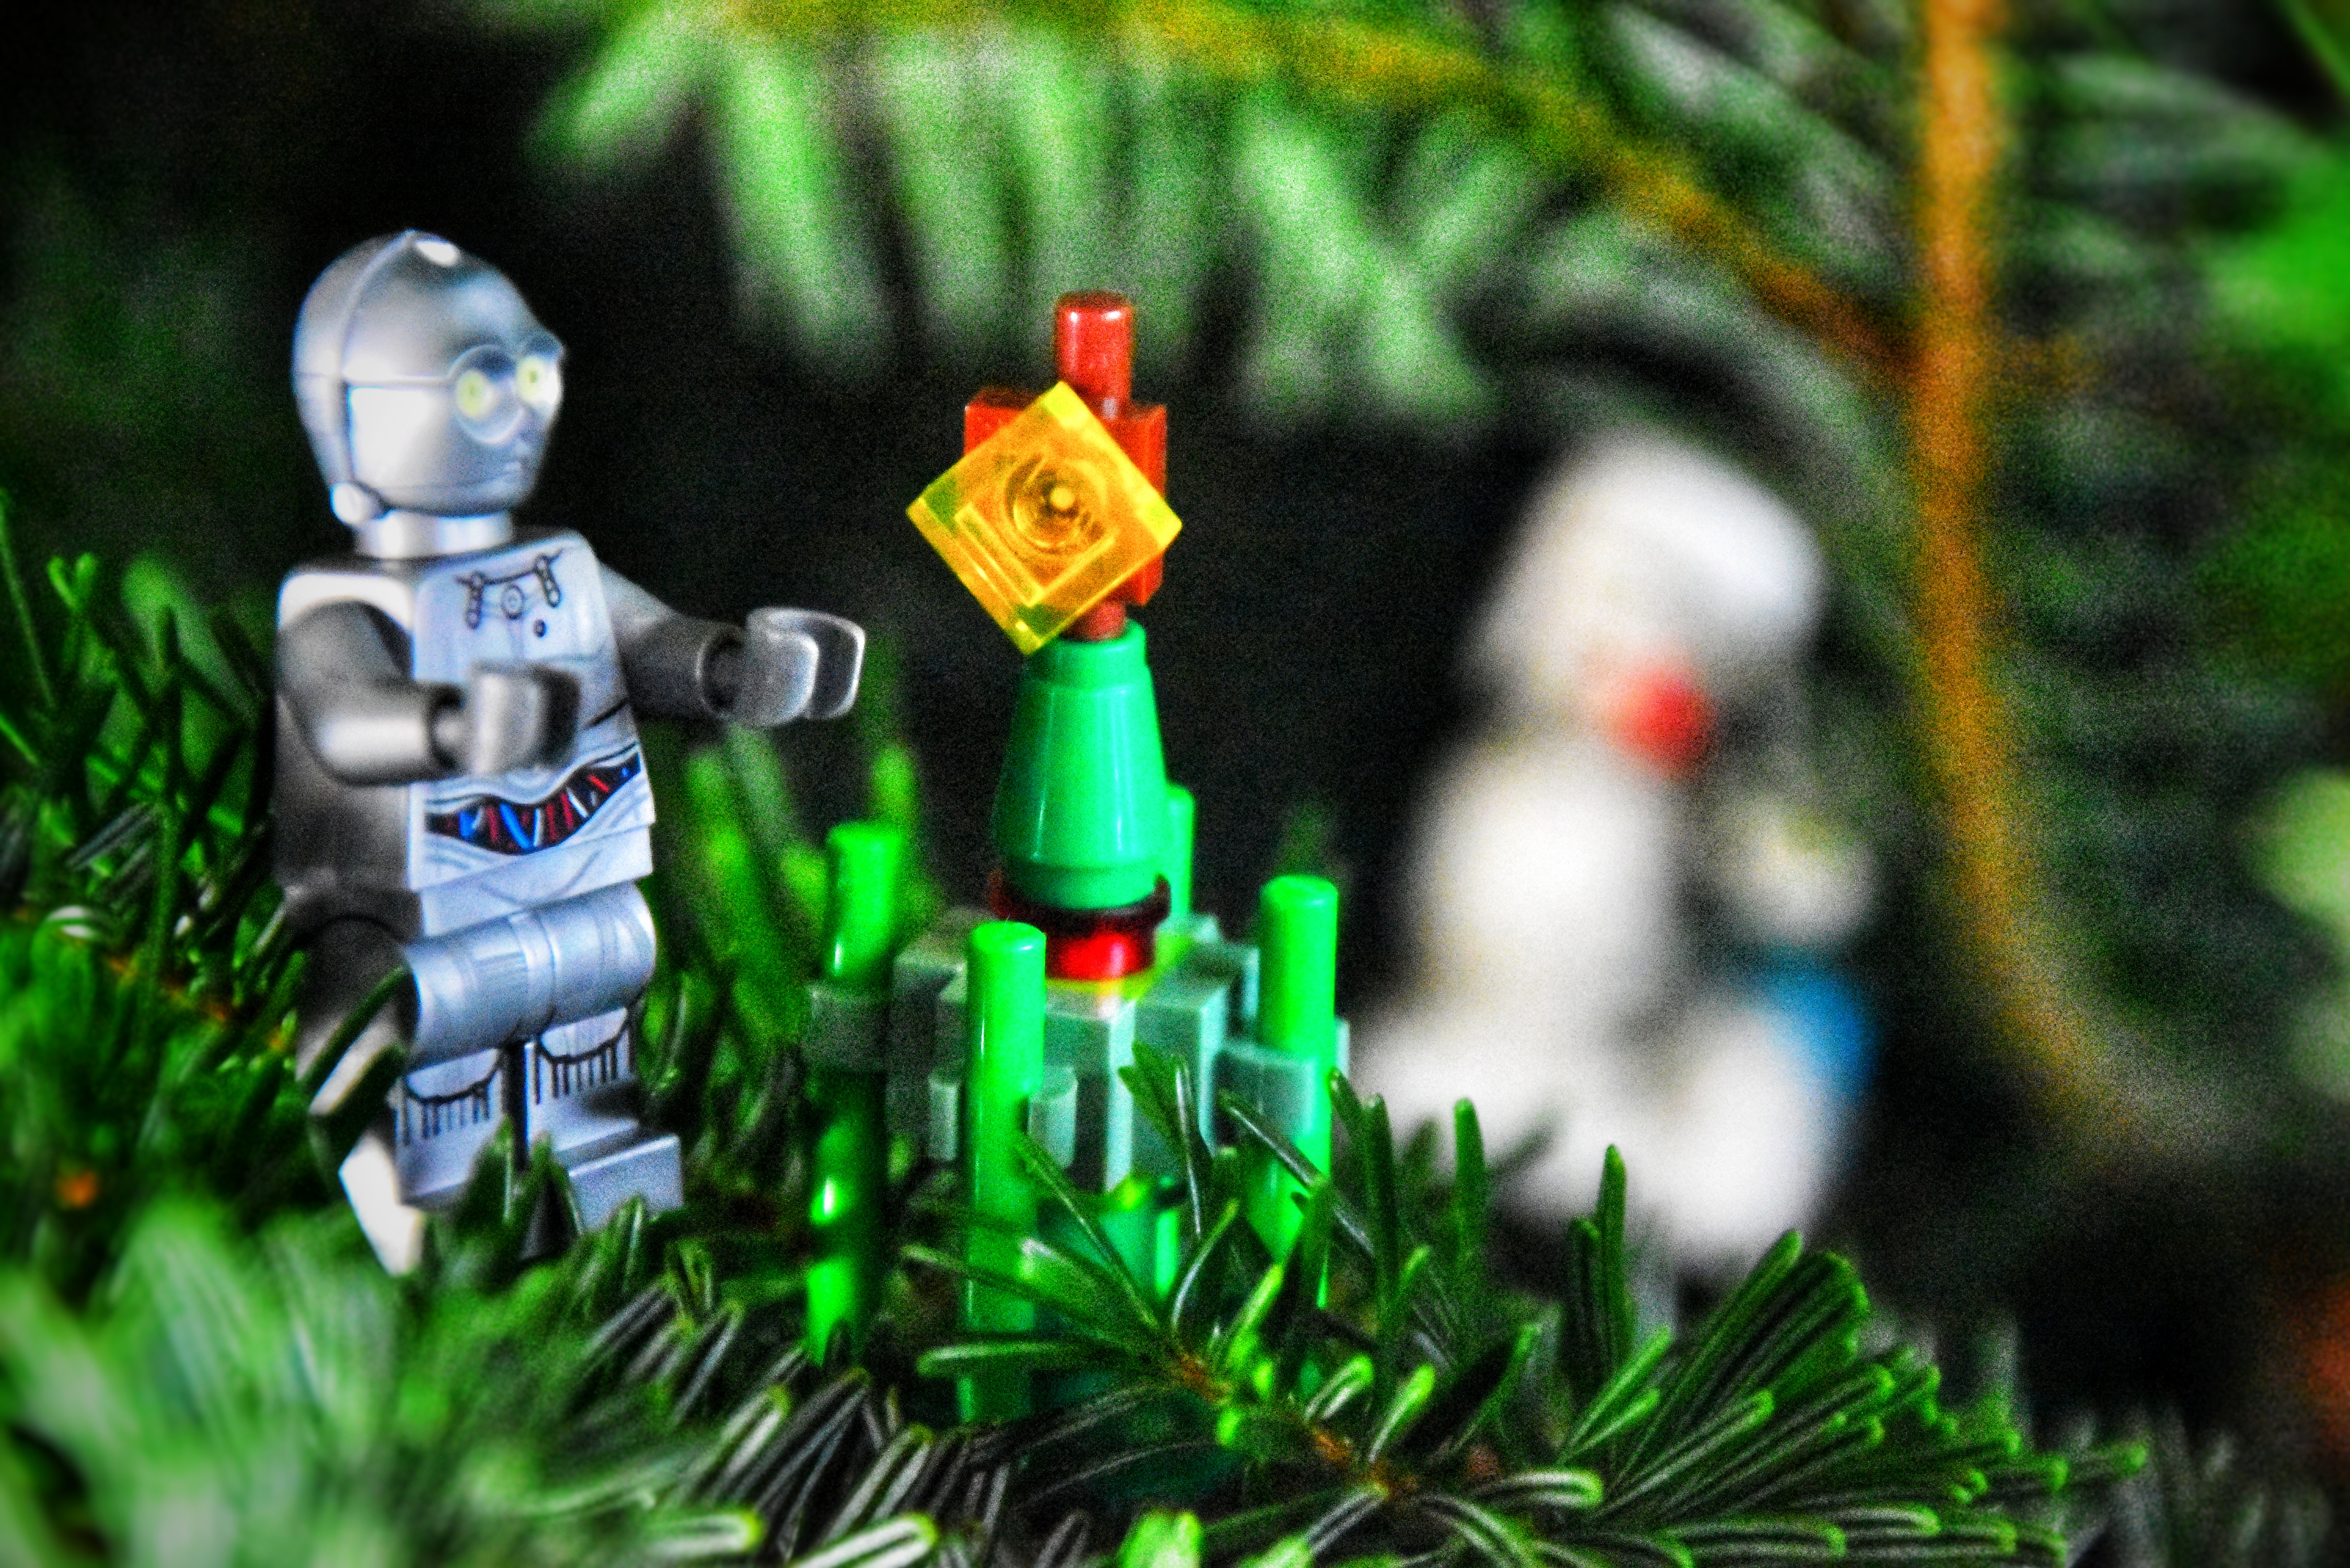 Lego Weihnachtsbaum